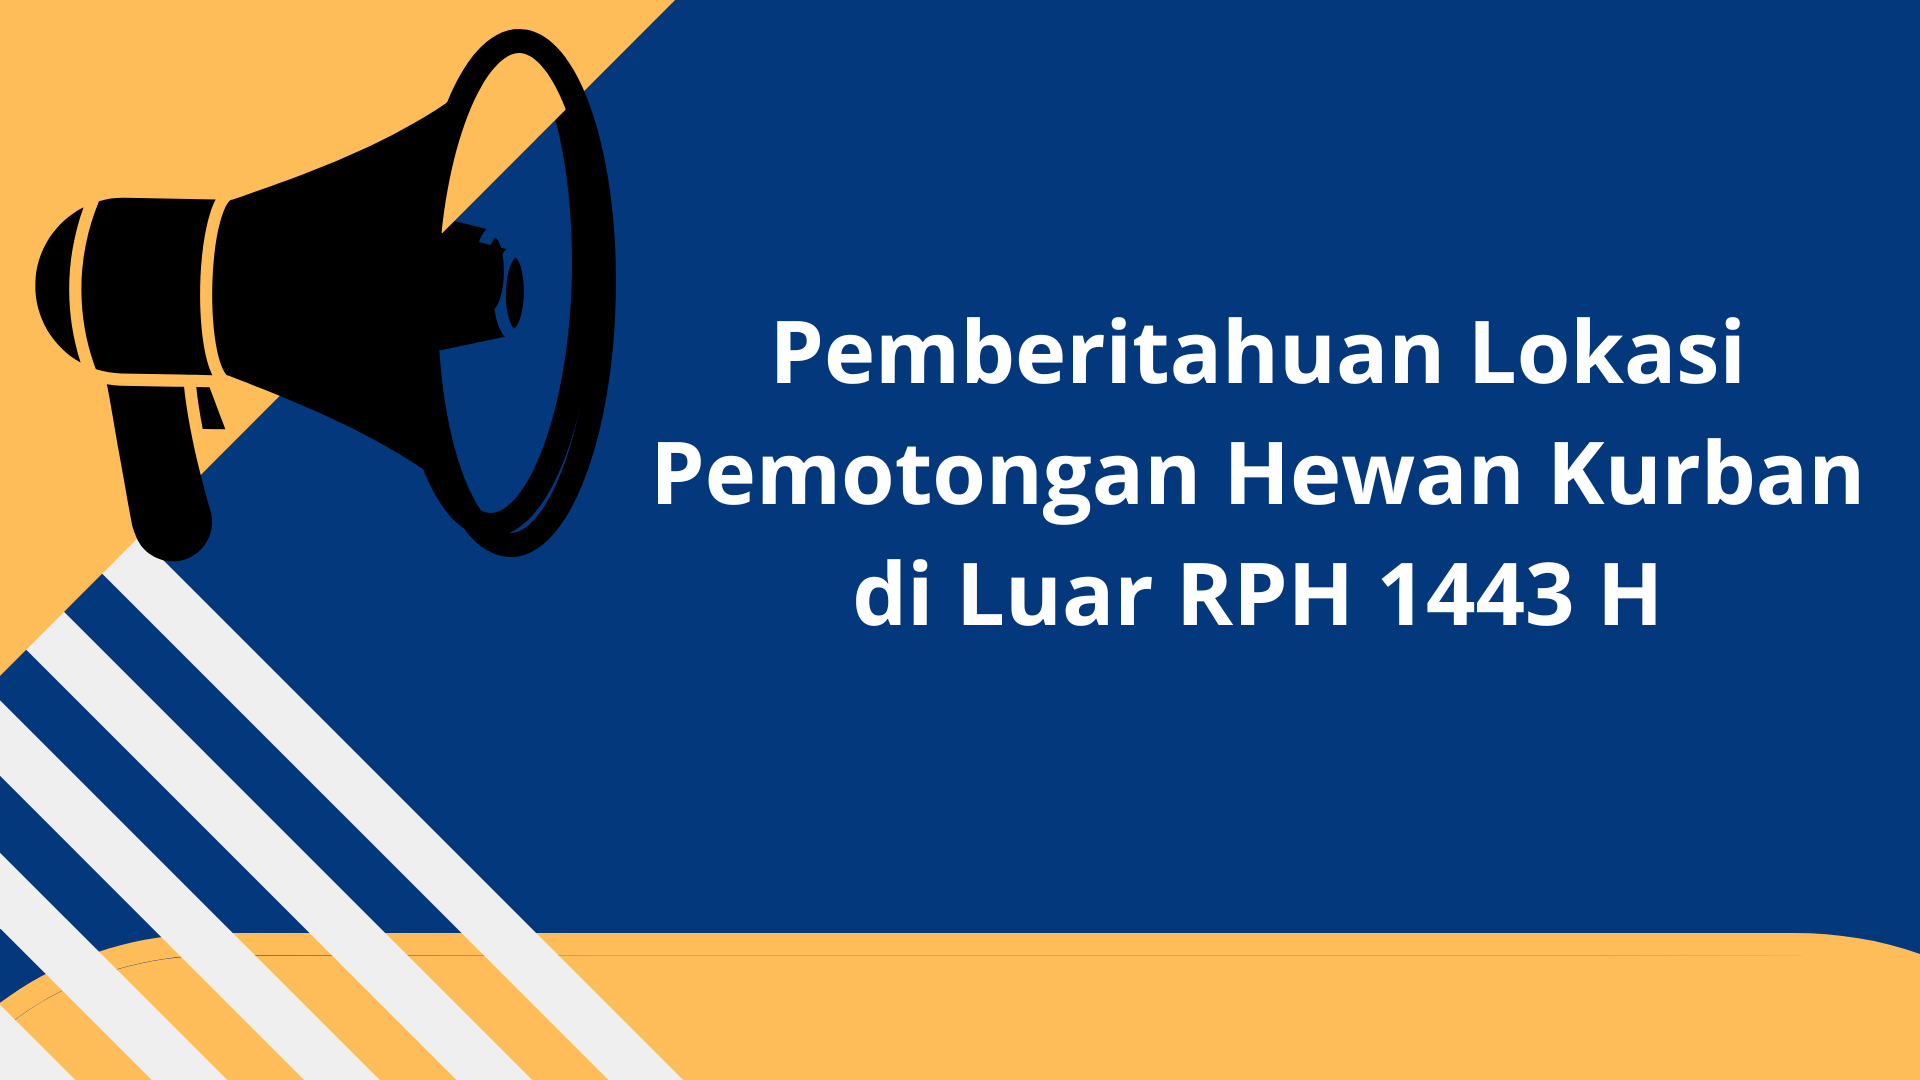 Pengumuman Lokasi Penyembelihan Hewan Qurban Di Luar Wilayah RPH 1443 H (2022)